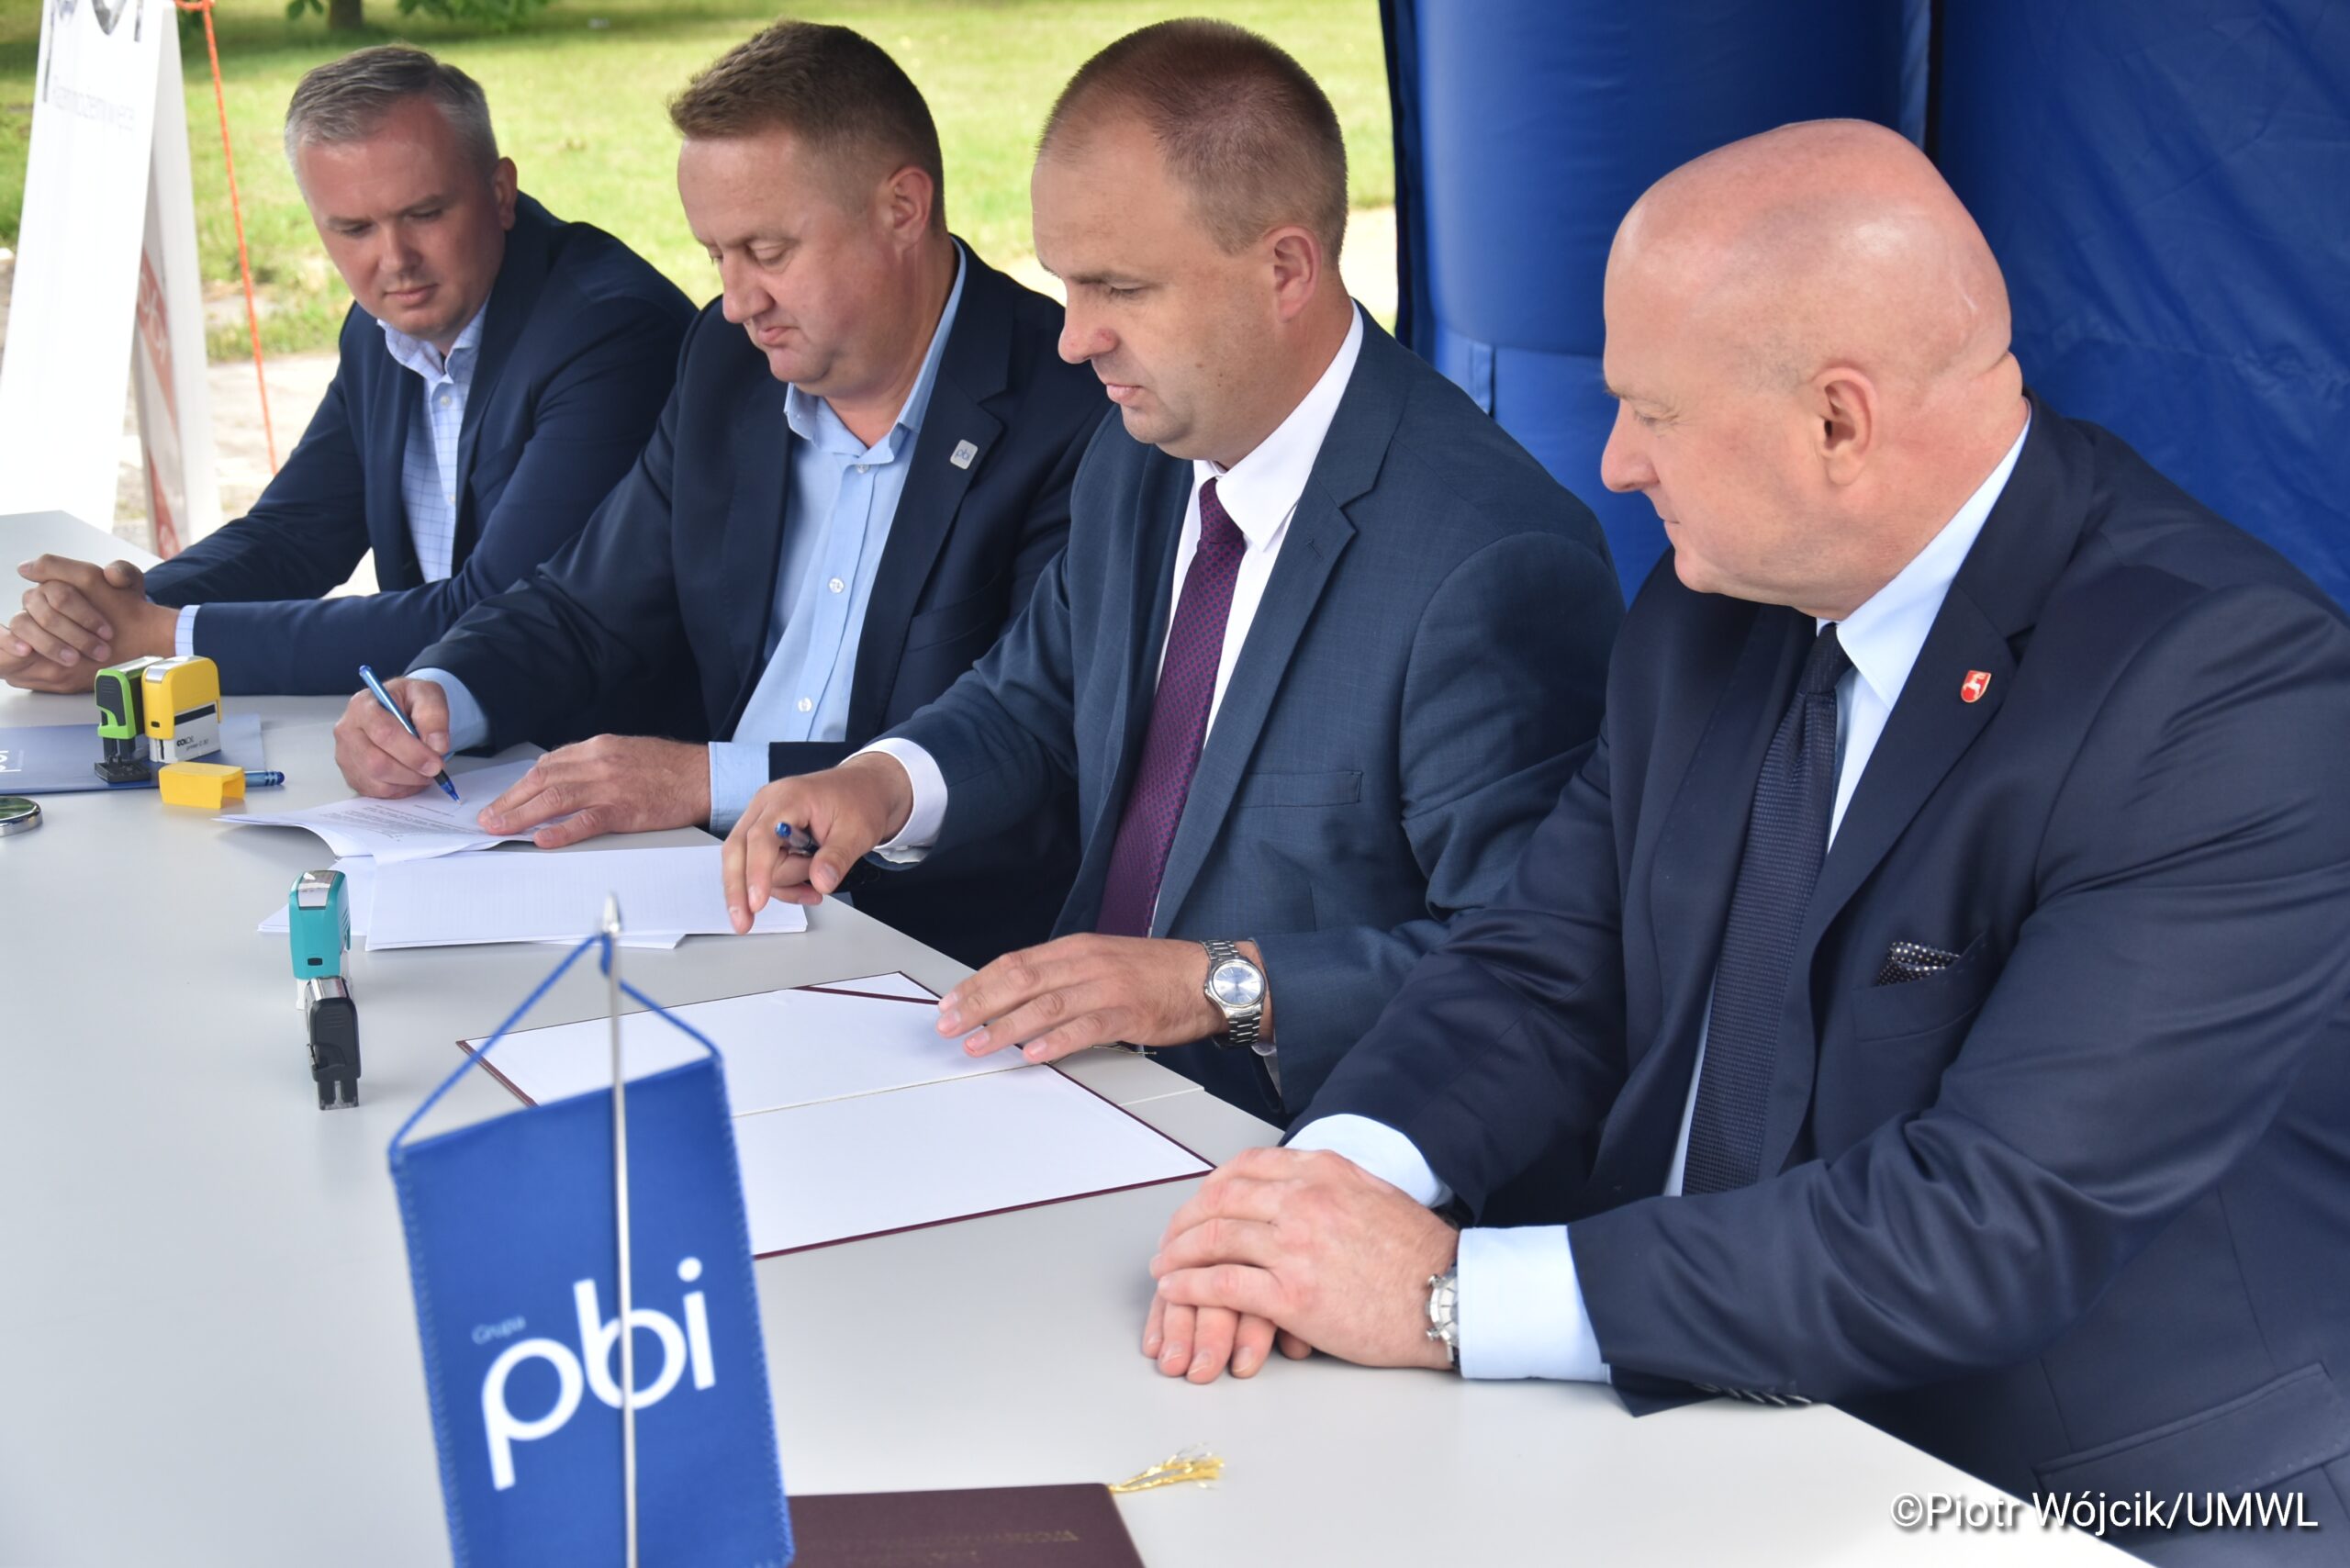 Dyrektor Zarządu Dróg Wojewódzkich w Lublinie podpisuje umowę na budowę północnejobw odnicy Kraśnika, w towarzystwie Marszałka Województwa Lubelskiego Jarosława Stawiarskiego oraz właścicieli firmy PBI.